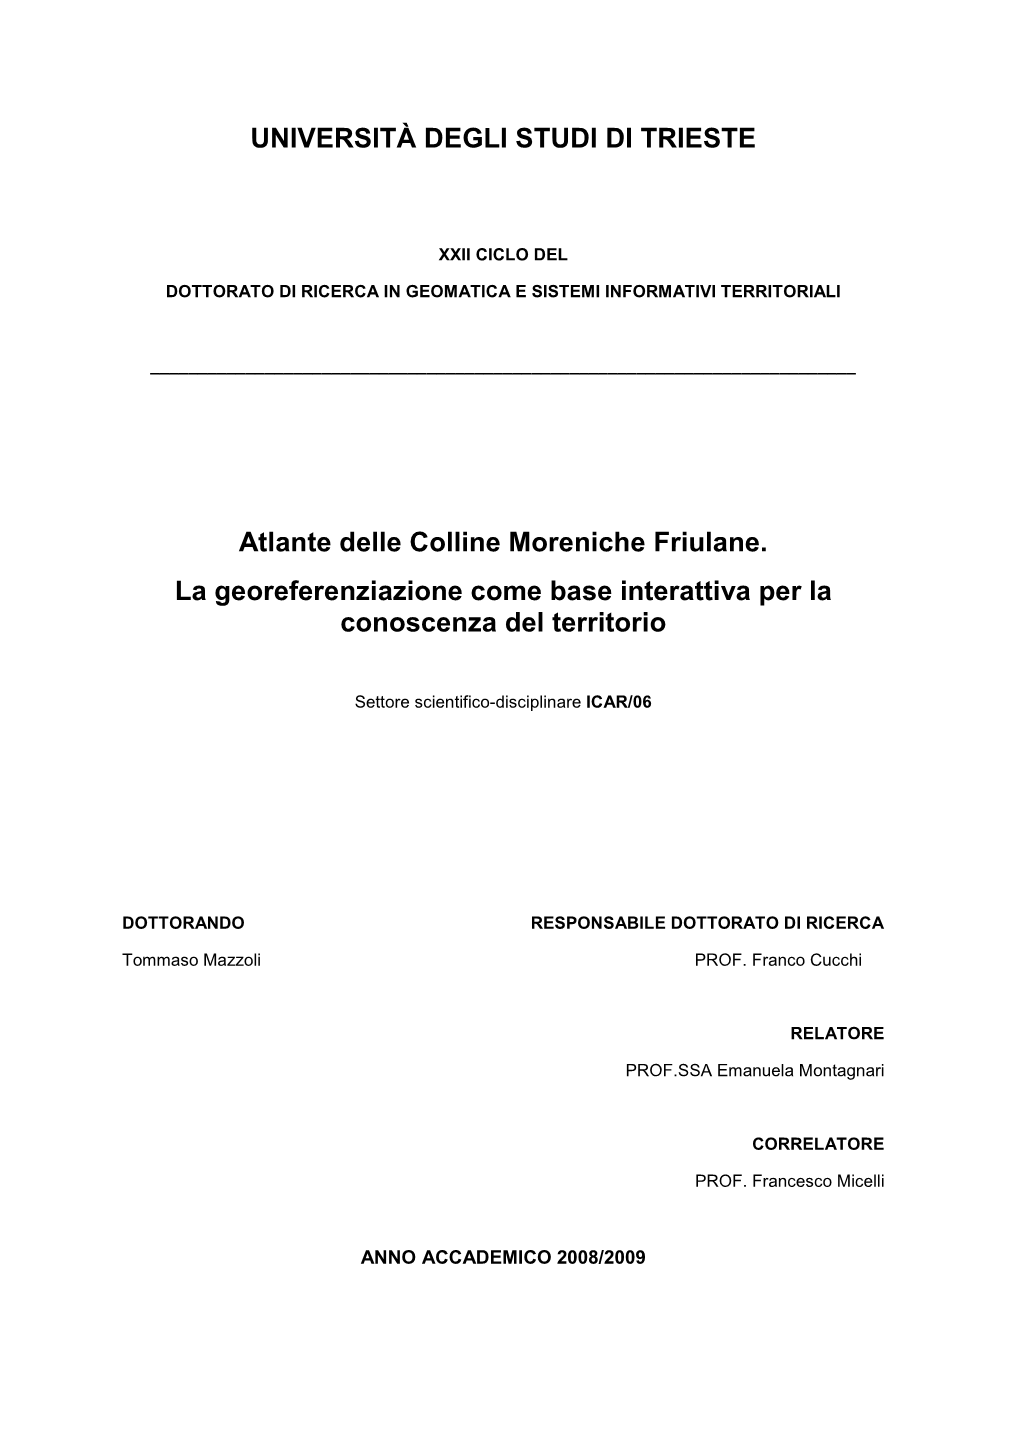 Colline Moreniche Friulane